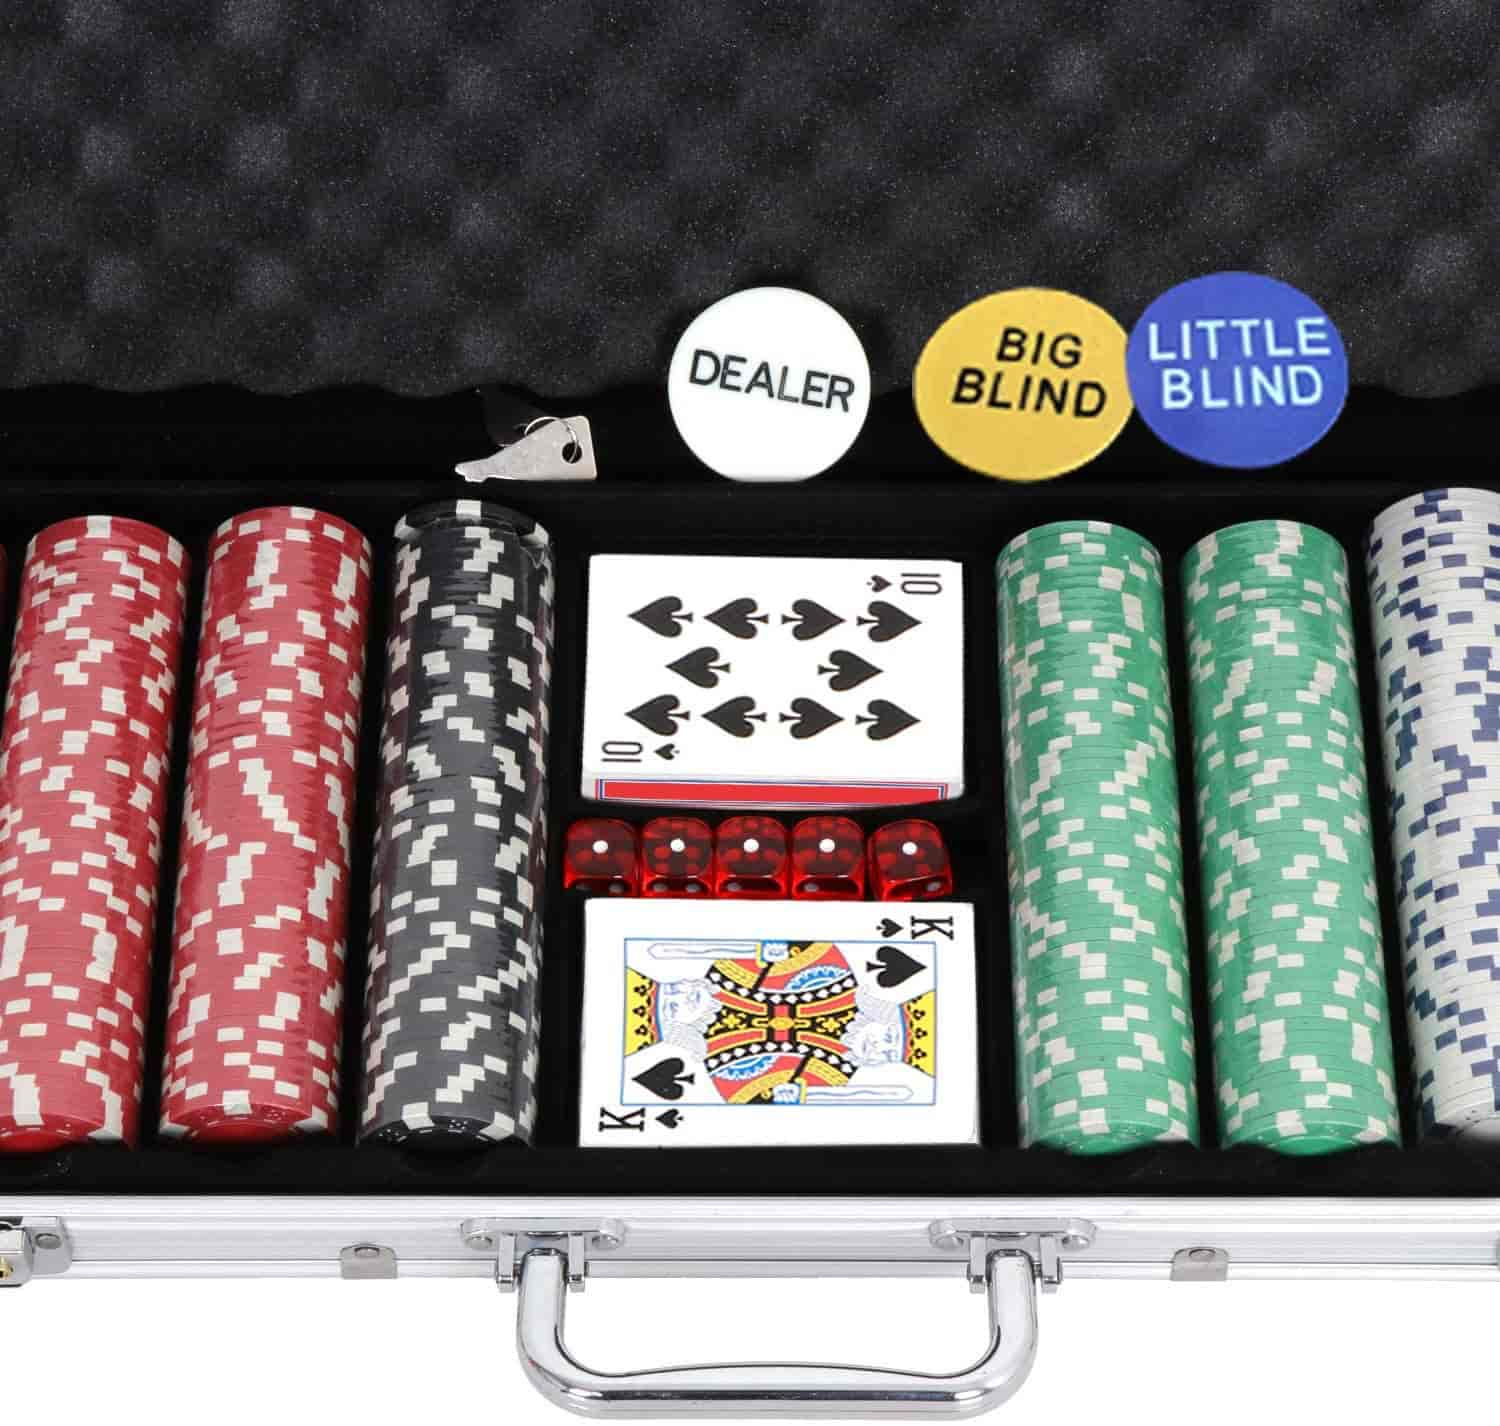 Покерный набор от GameMaster: зачем нужен и из чего состоит